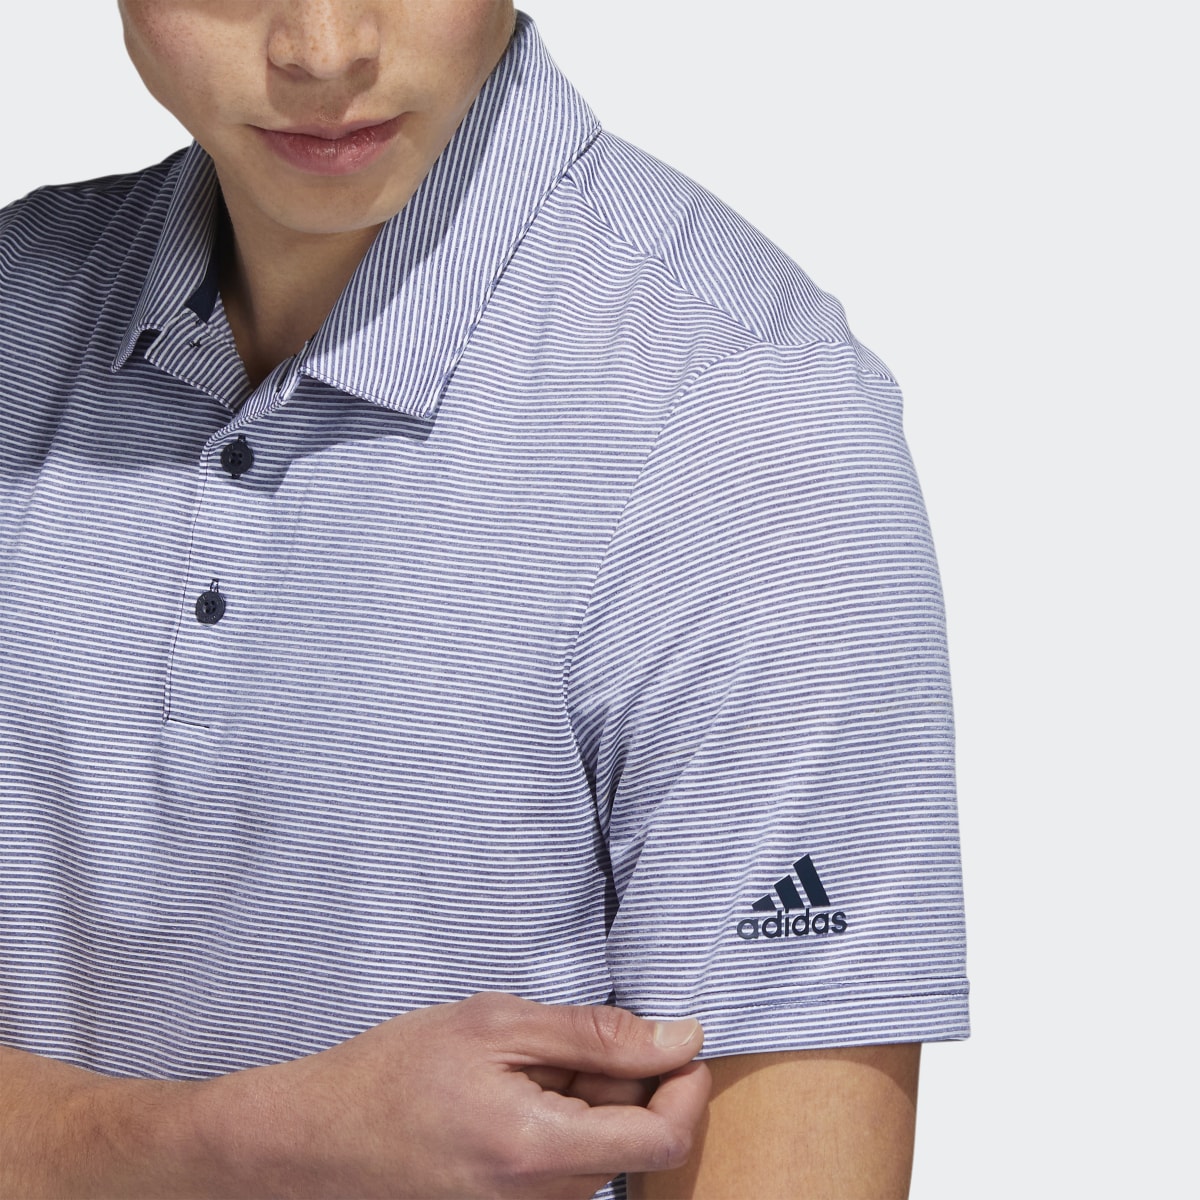 Adidas Ottoman Stripe Poloshirt. 6